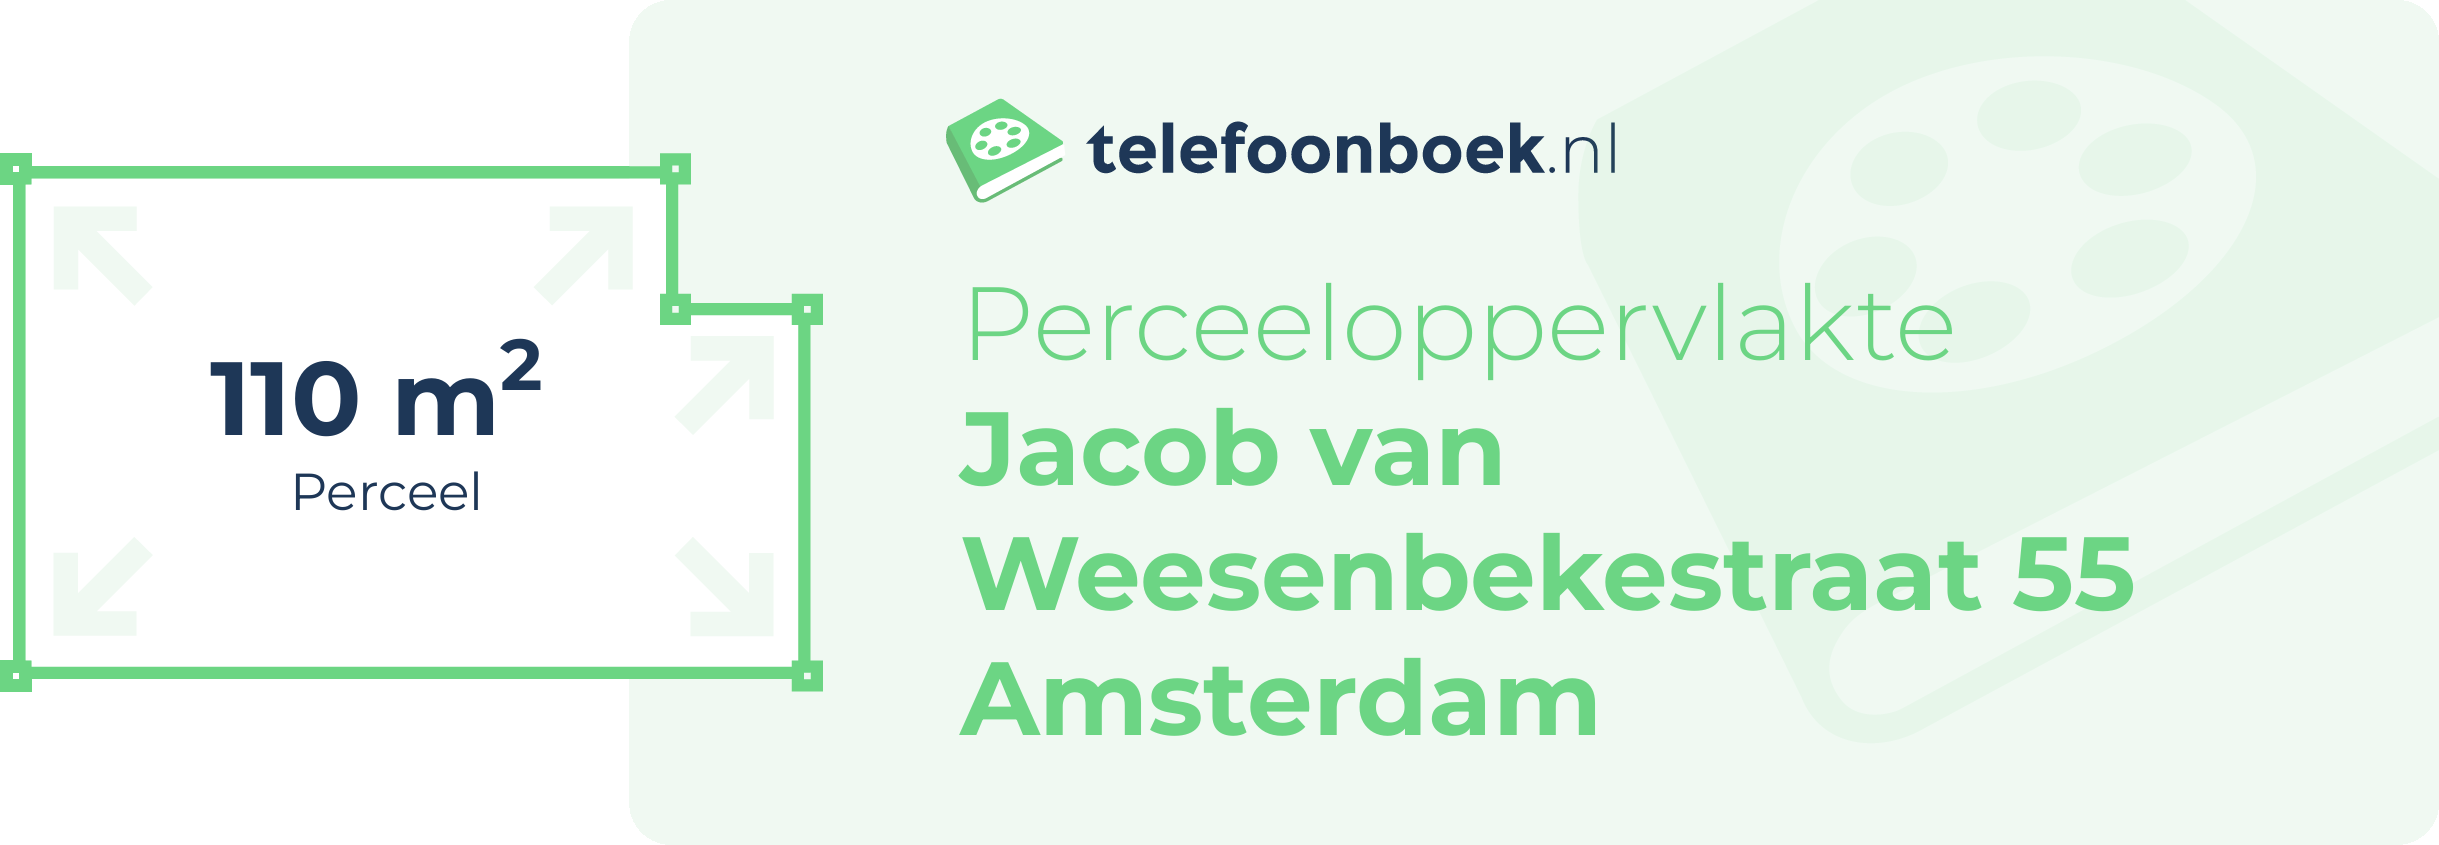 Perceeloppervlakte Jacob Van Weesenbekestraat 55 Amsterdam